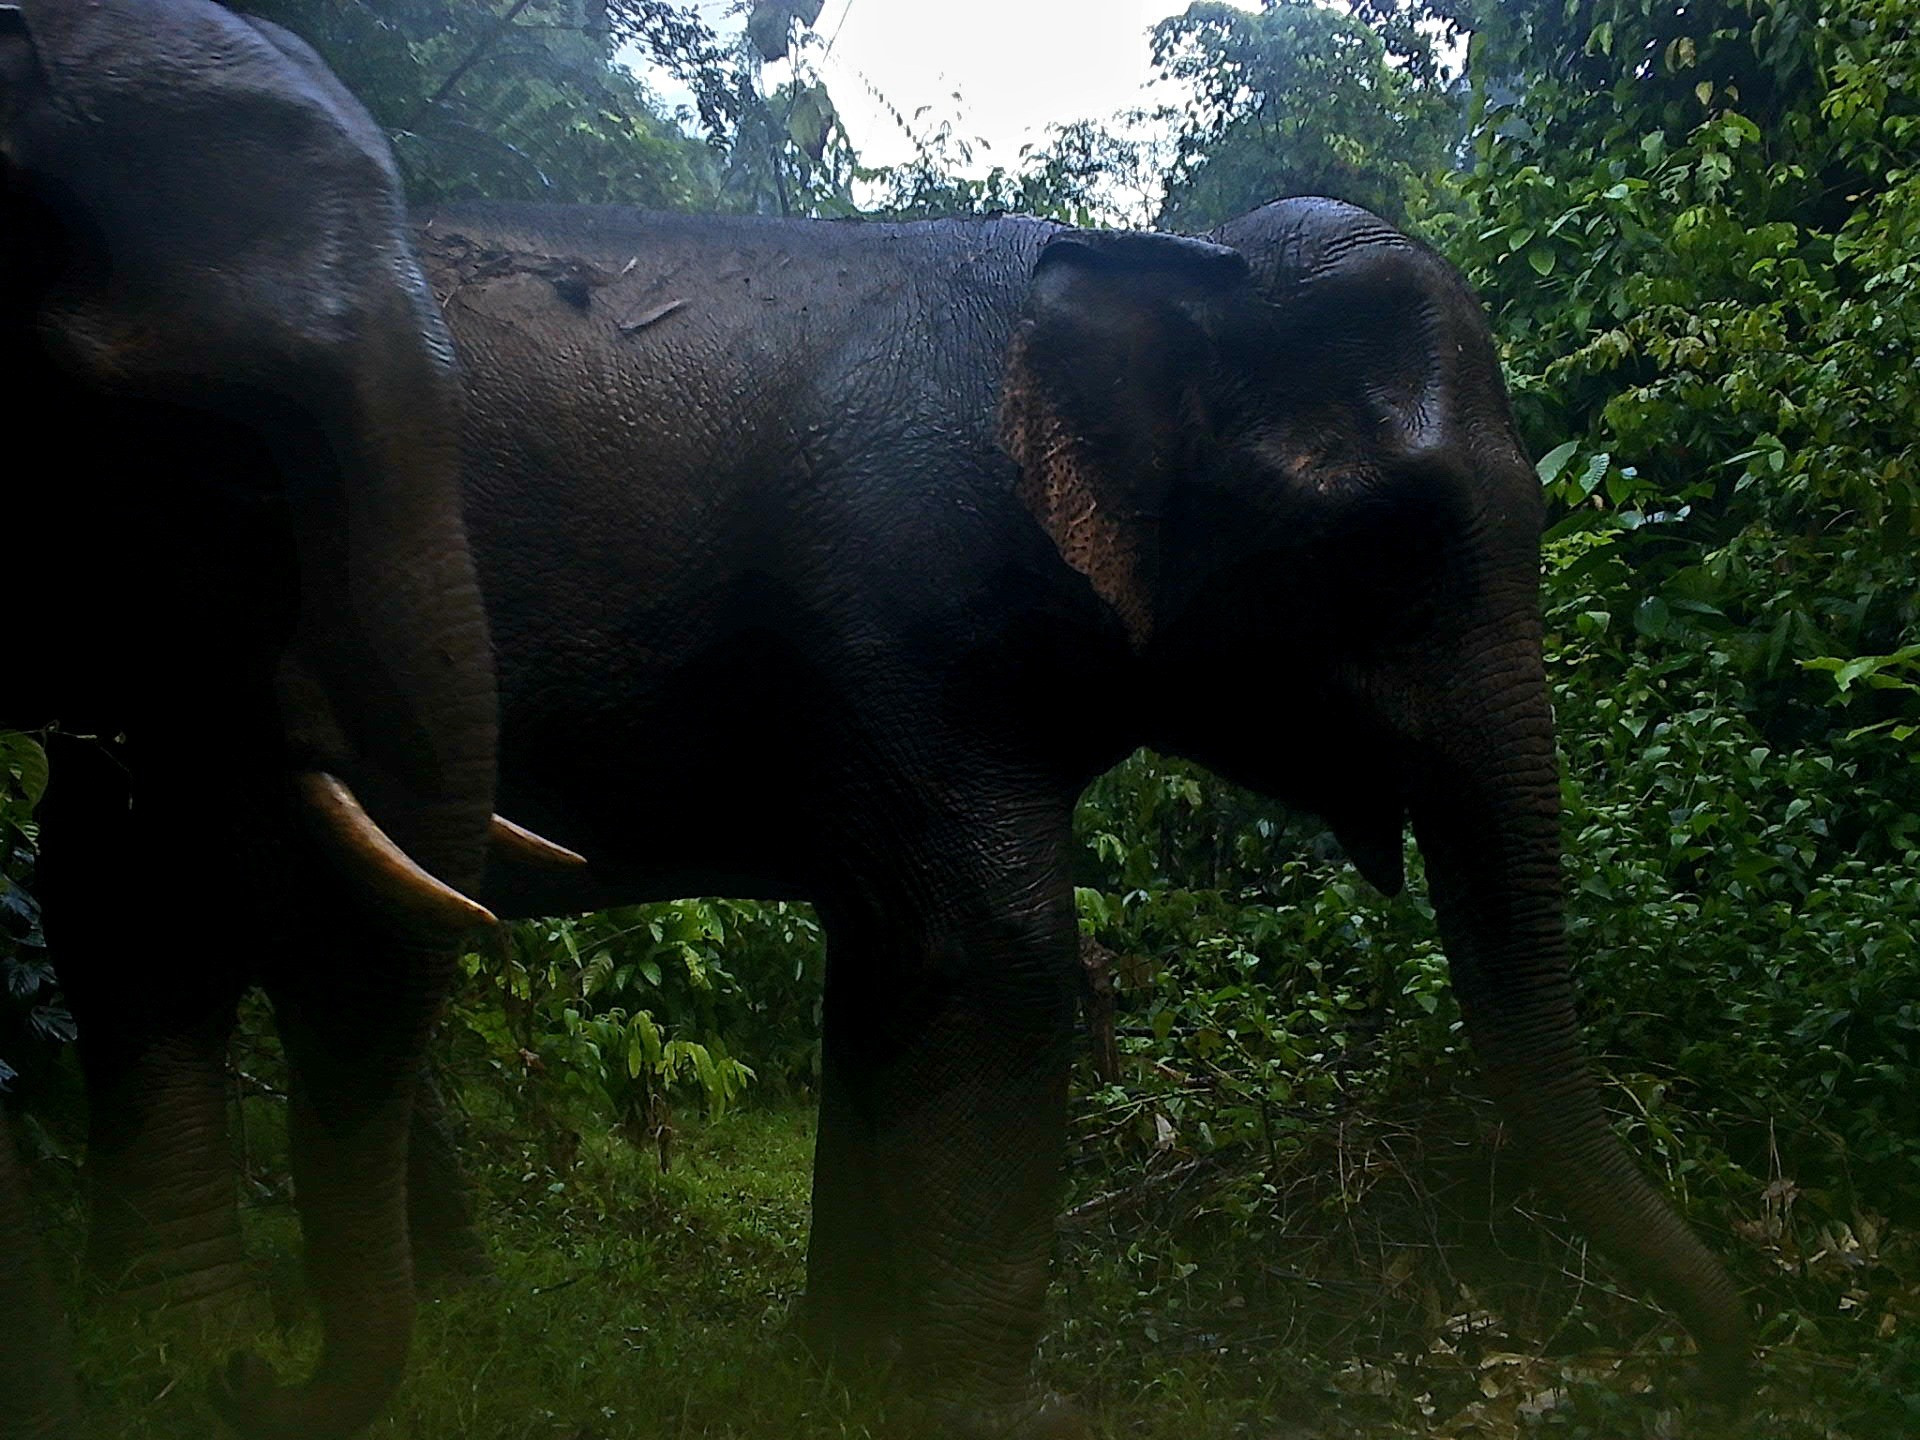 Việc giữ rừng, bảo vệ sinh cảnh của voi rừng và động vật quý hiếm là nhiệm vụ cấp thiết. Ảnh: Ban quản lý KBT loài và sinh cảnh voi cung cấp.